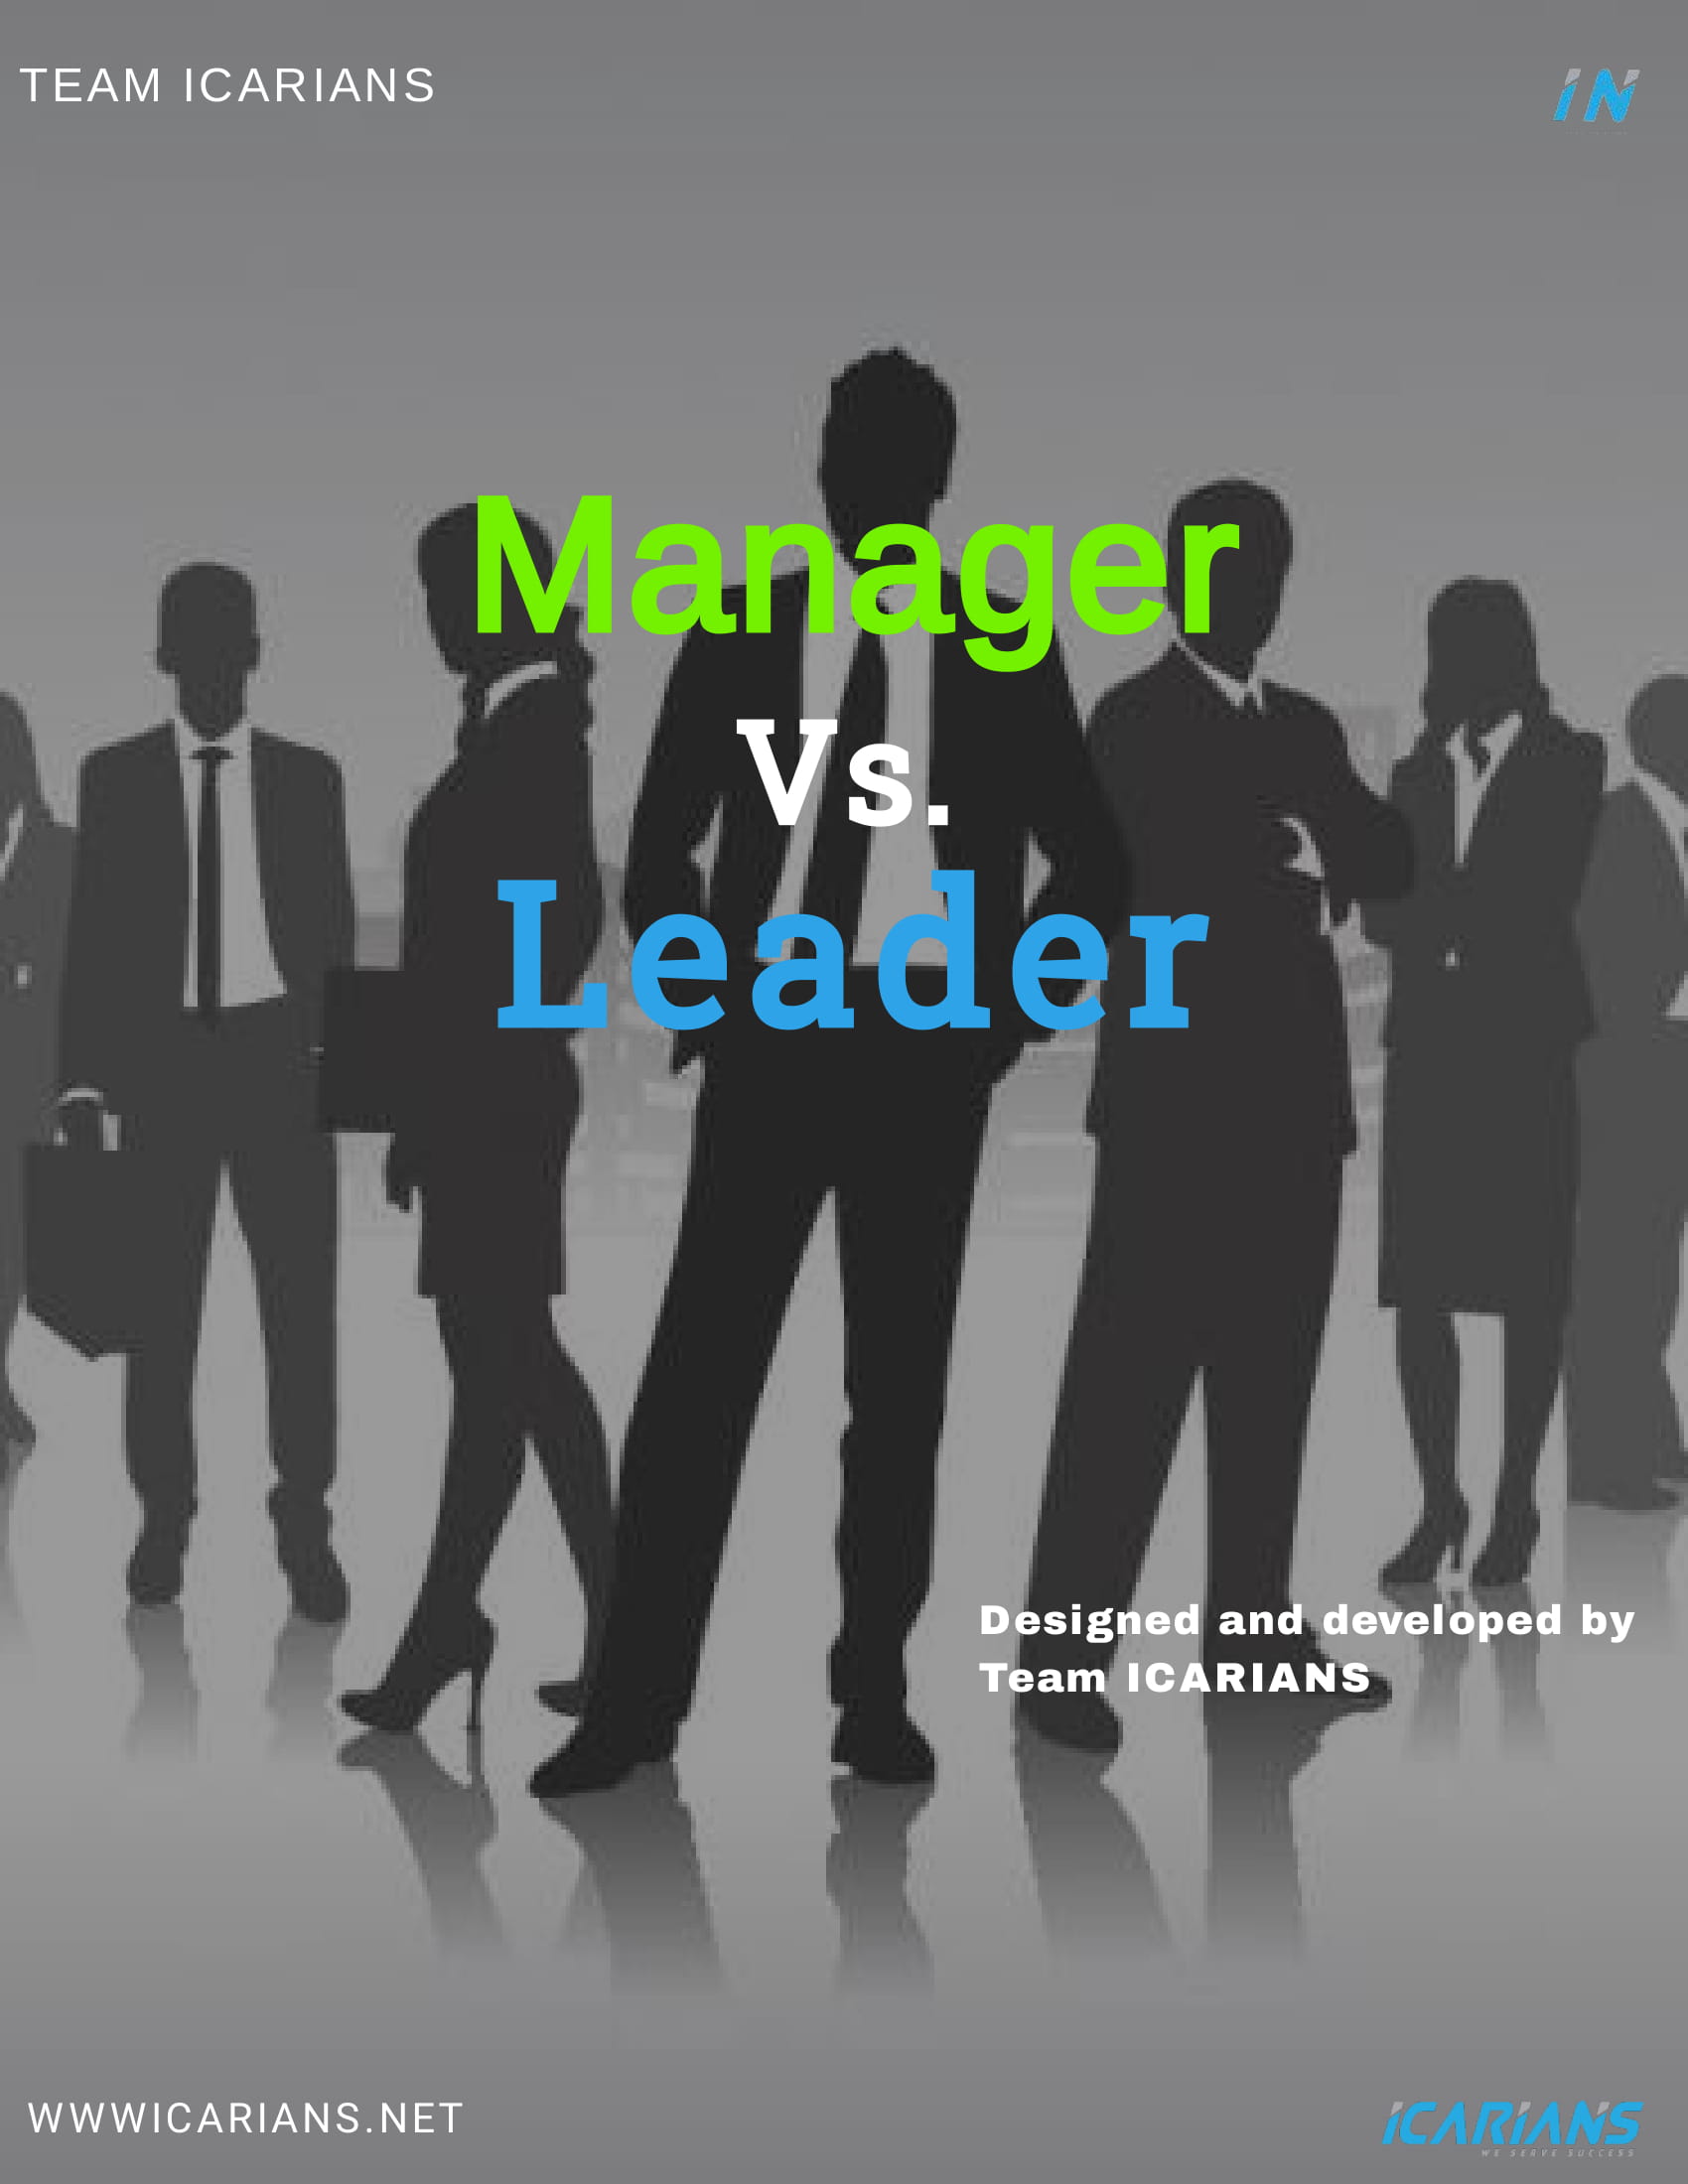 MANAGER VS. LEADER